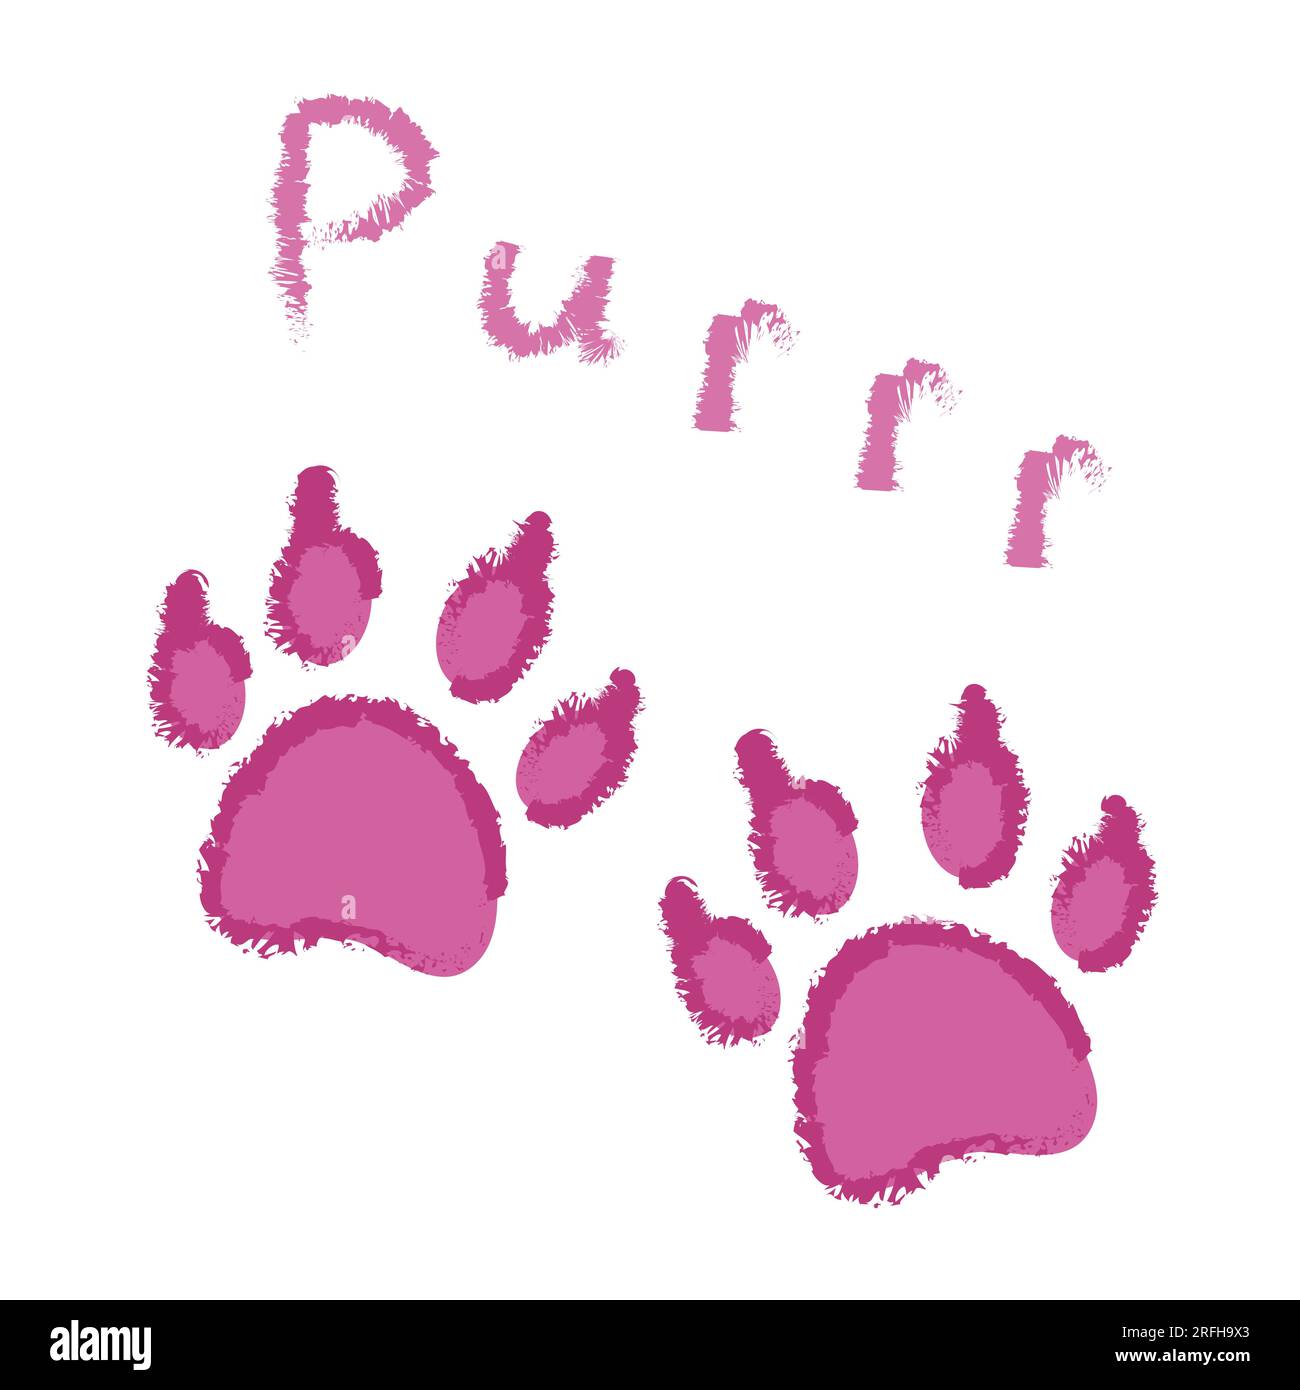 Süße flauschige pinkfarbene Tierabdrücke mit Katzenmotiv und Schriftzug „Purr“. Vektor isoliert. Design für eine Karte, Einband, Grußkarte, Modedruck für Tierkleidung, Sammelalben, Tierhandlung. Stock Vektor